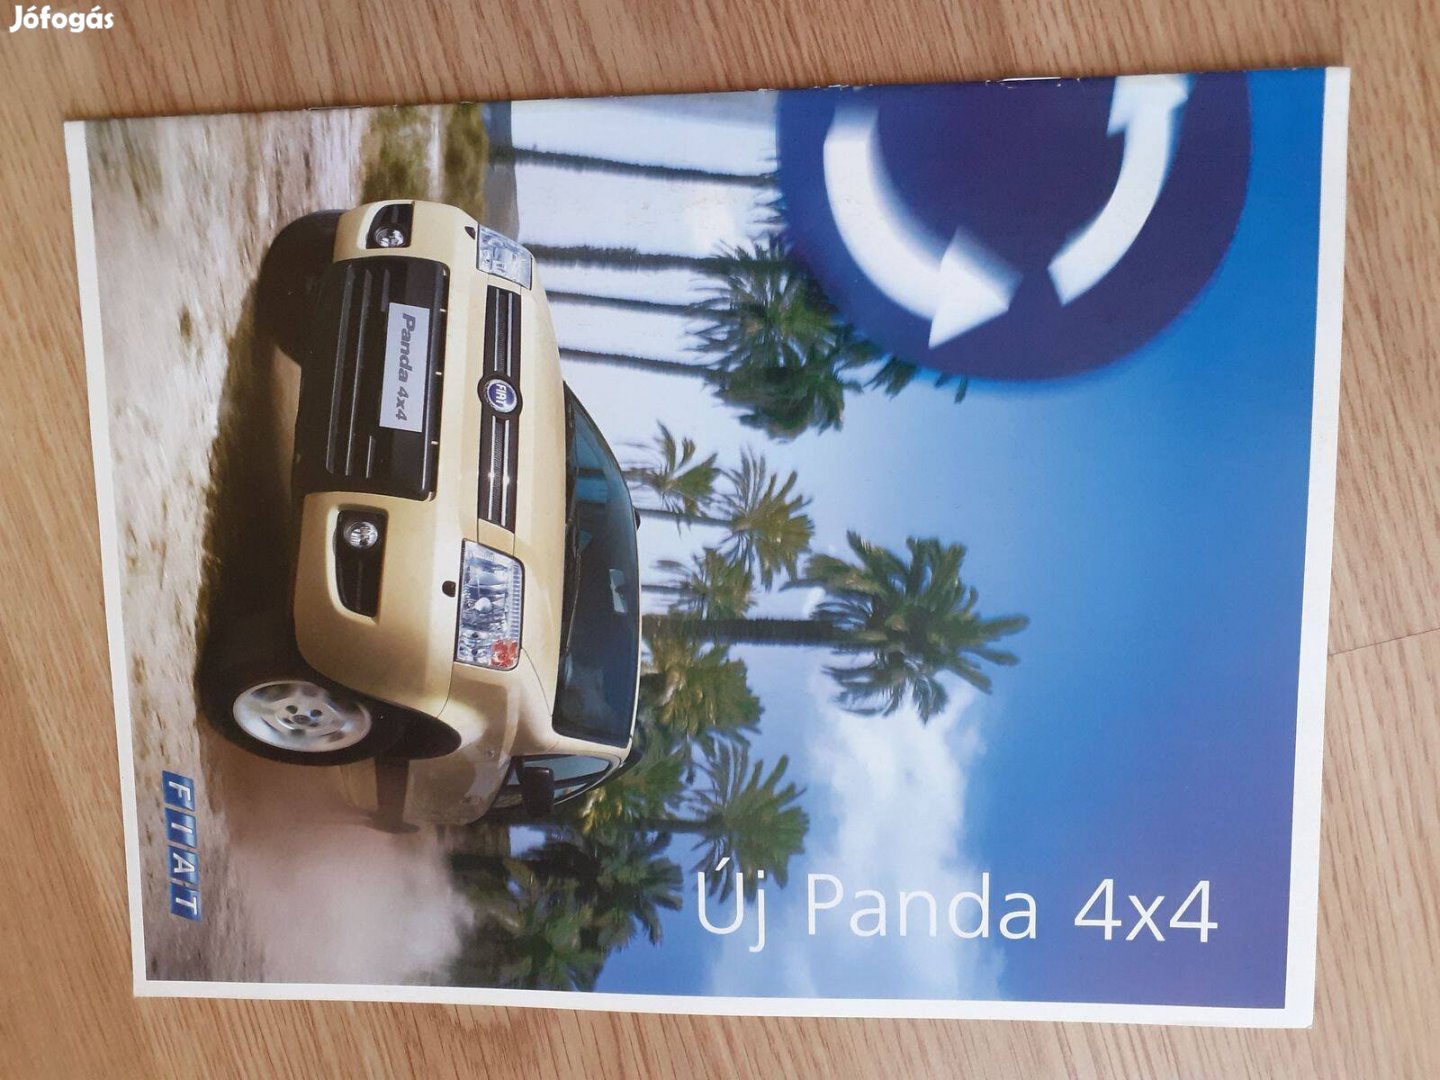 Fiat Panda 4x4 prospektus - 2004, magyar nyelvű